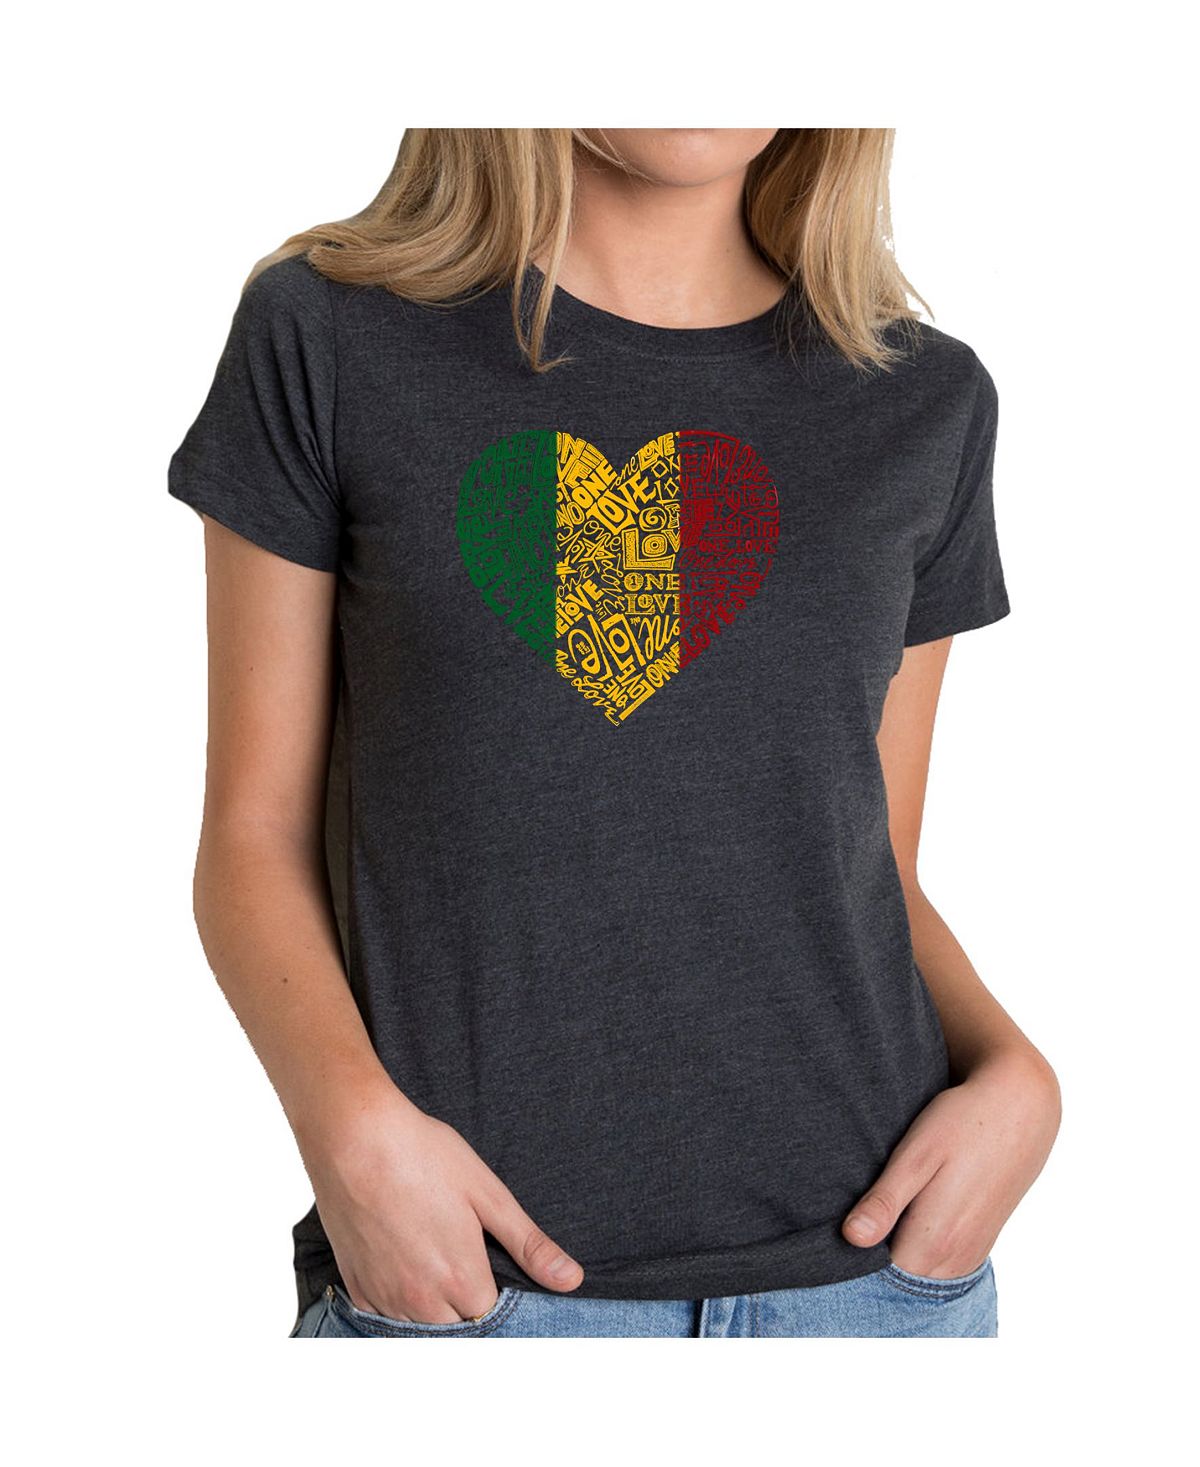 Женская футболка premium word art - one love heart LA Pop Art, черный фартук сердце из слов жене